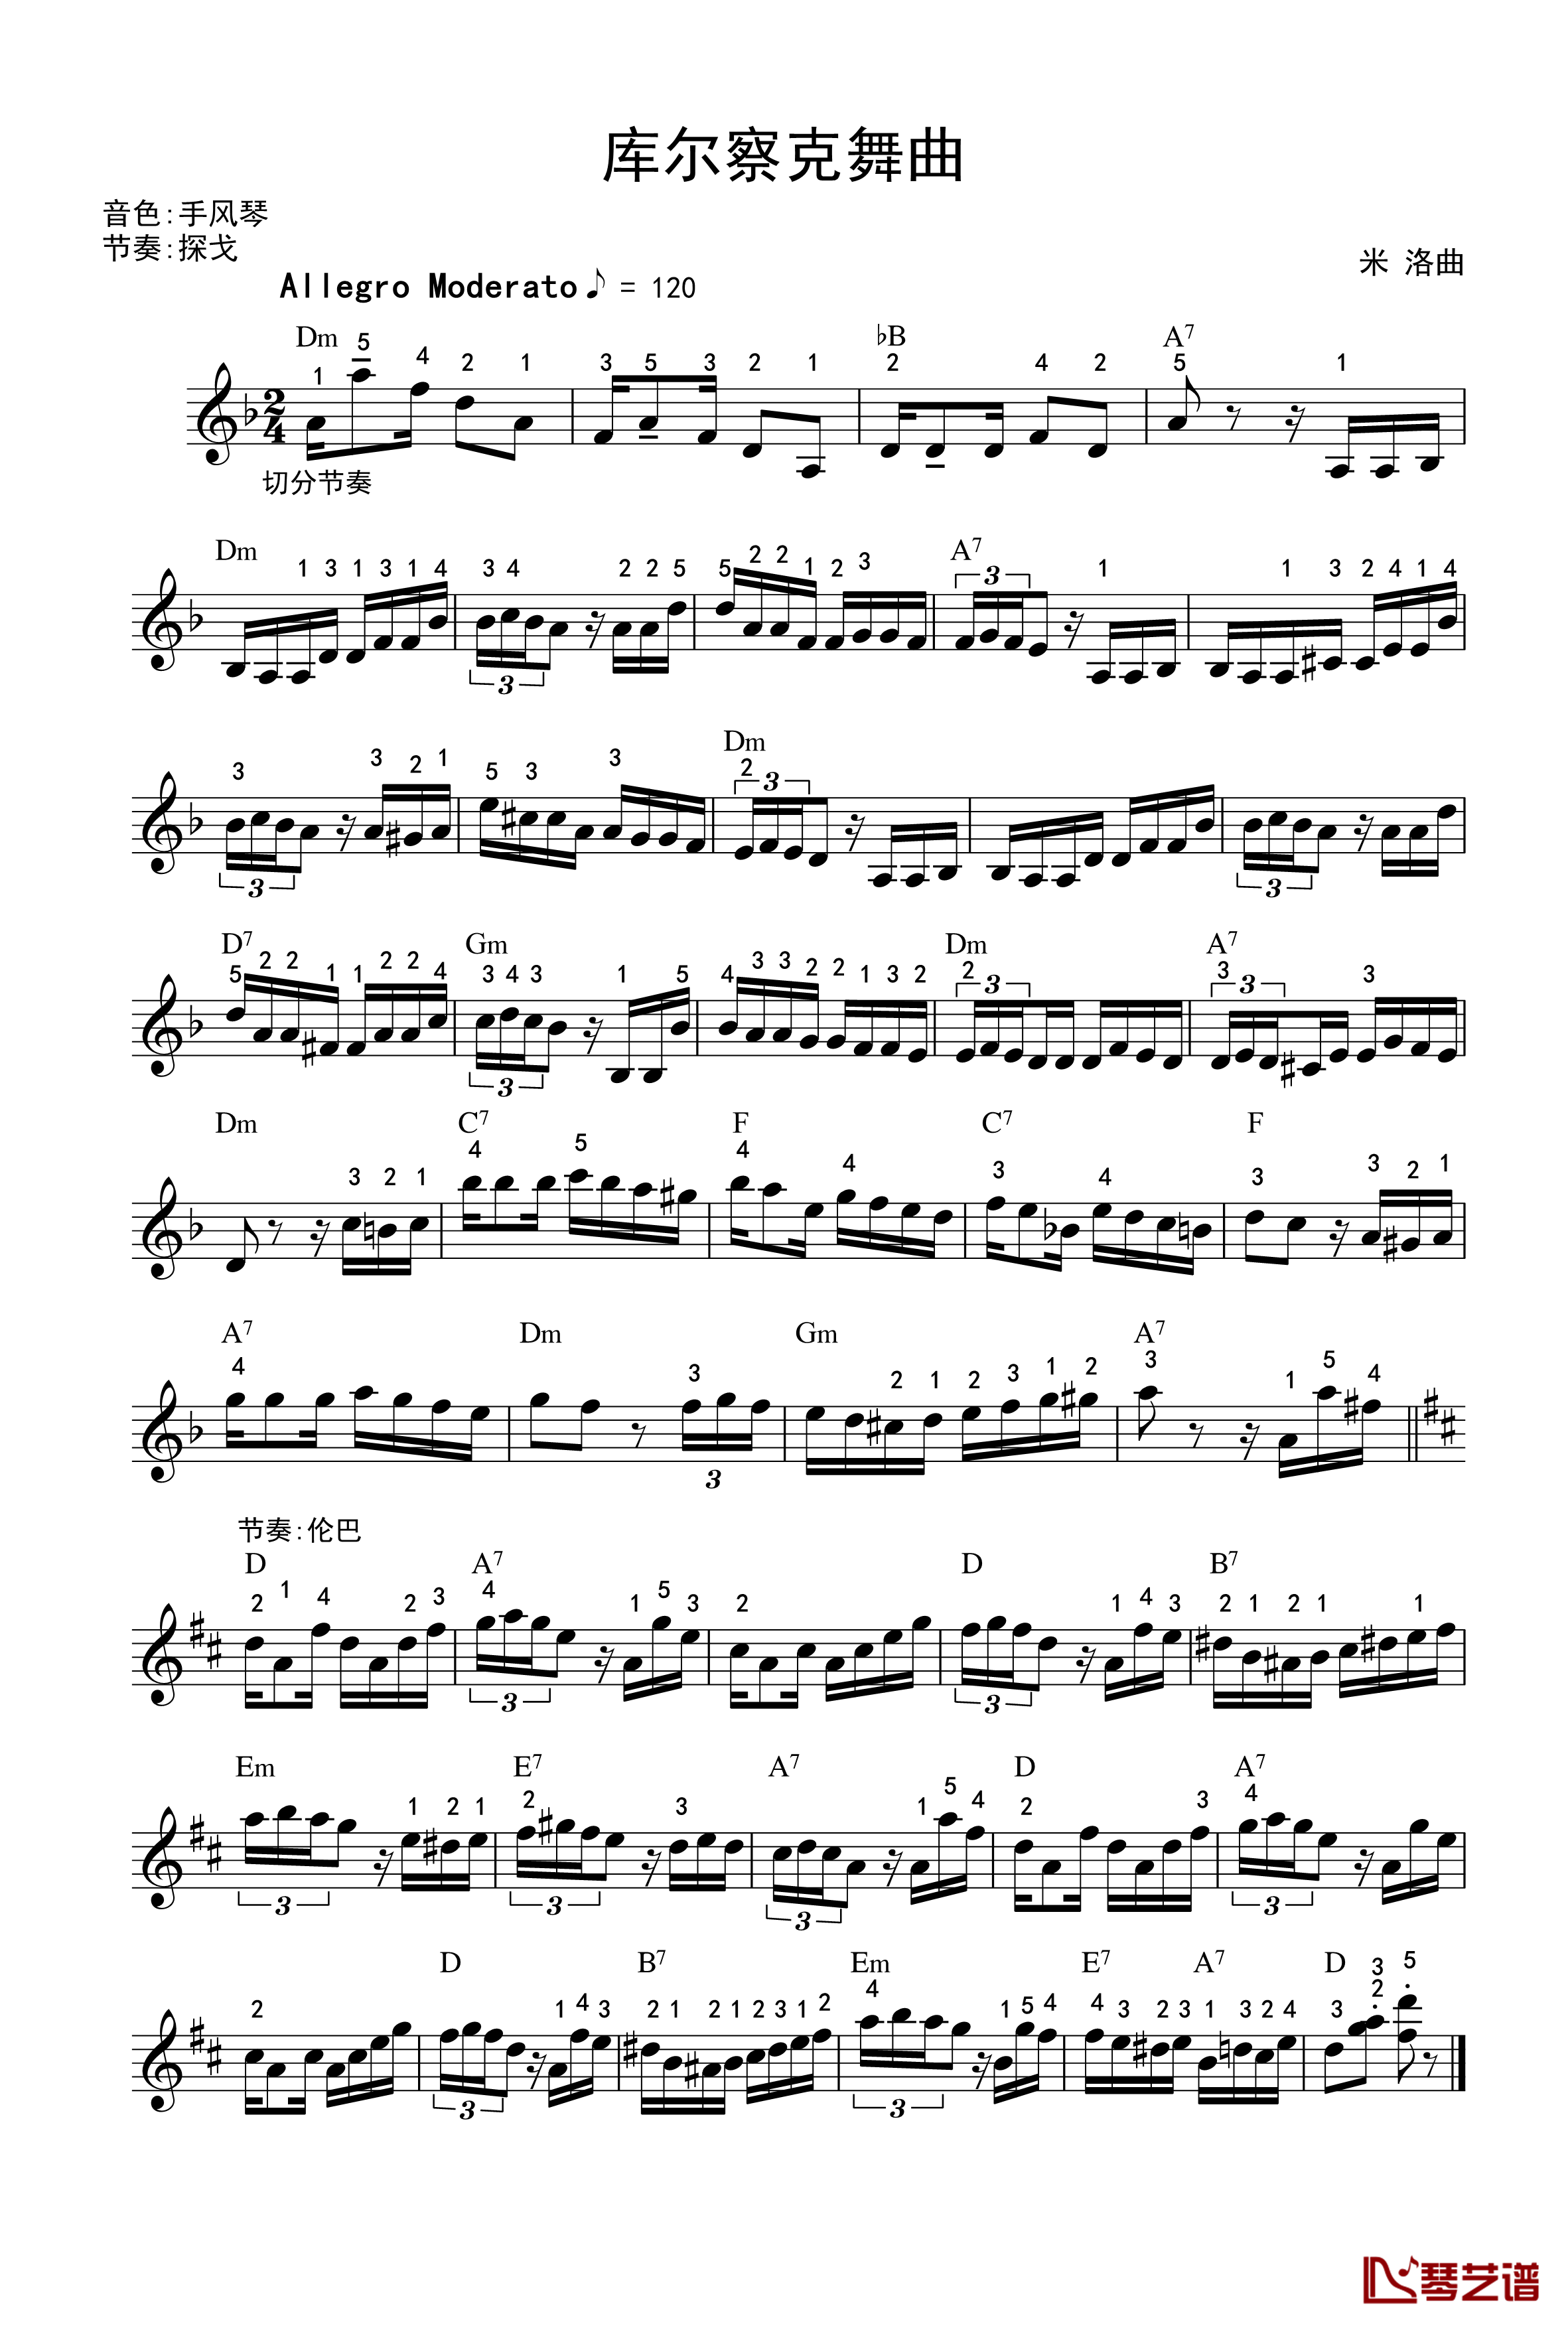 库尔察克舞曲钢琴谱-电子琴-世界名曲1